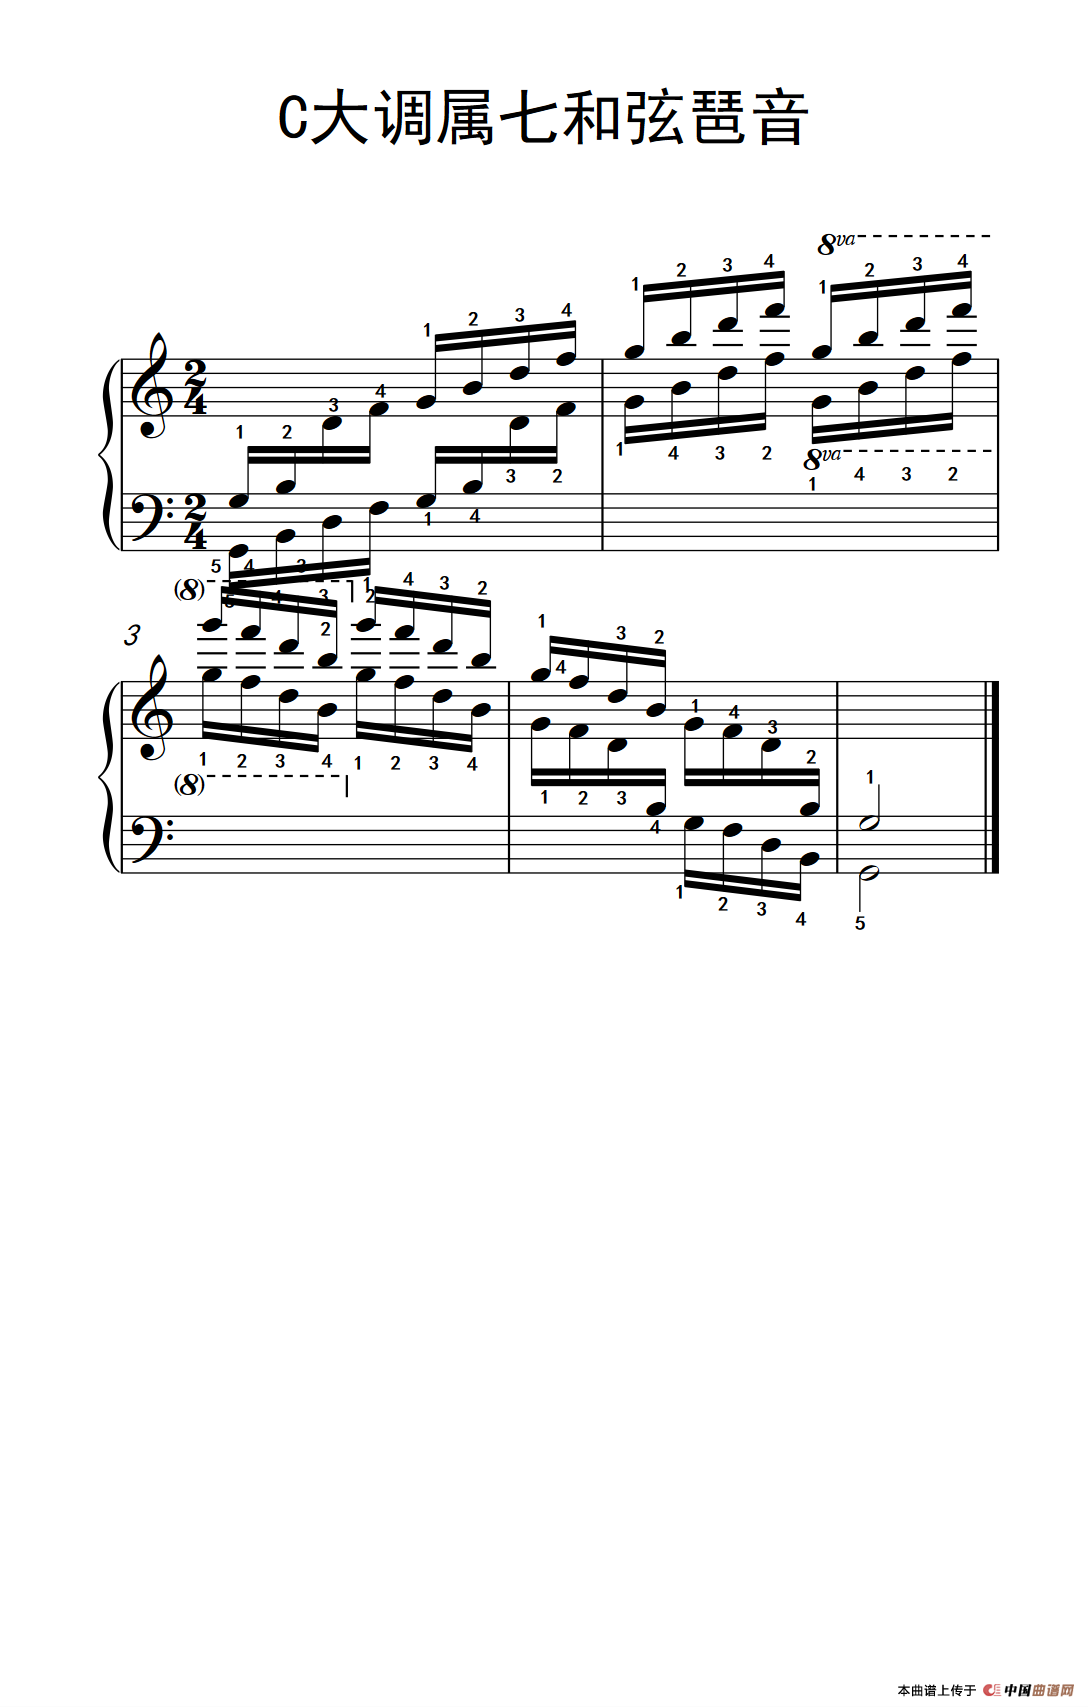 第六级 1.C大调属七和弦琶音（中央音乐学院 钢琴（业余）考级教程 4-6级）(1)_266_148_1.png